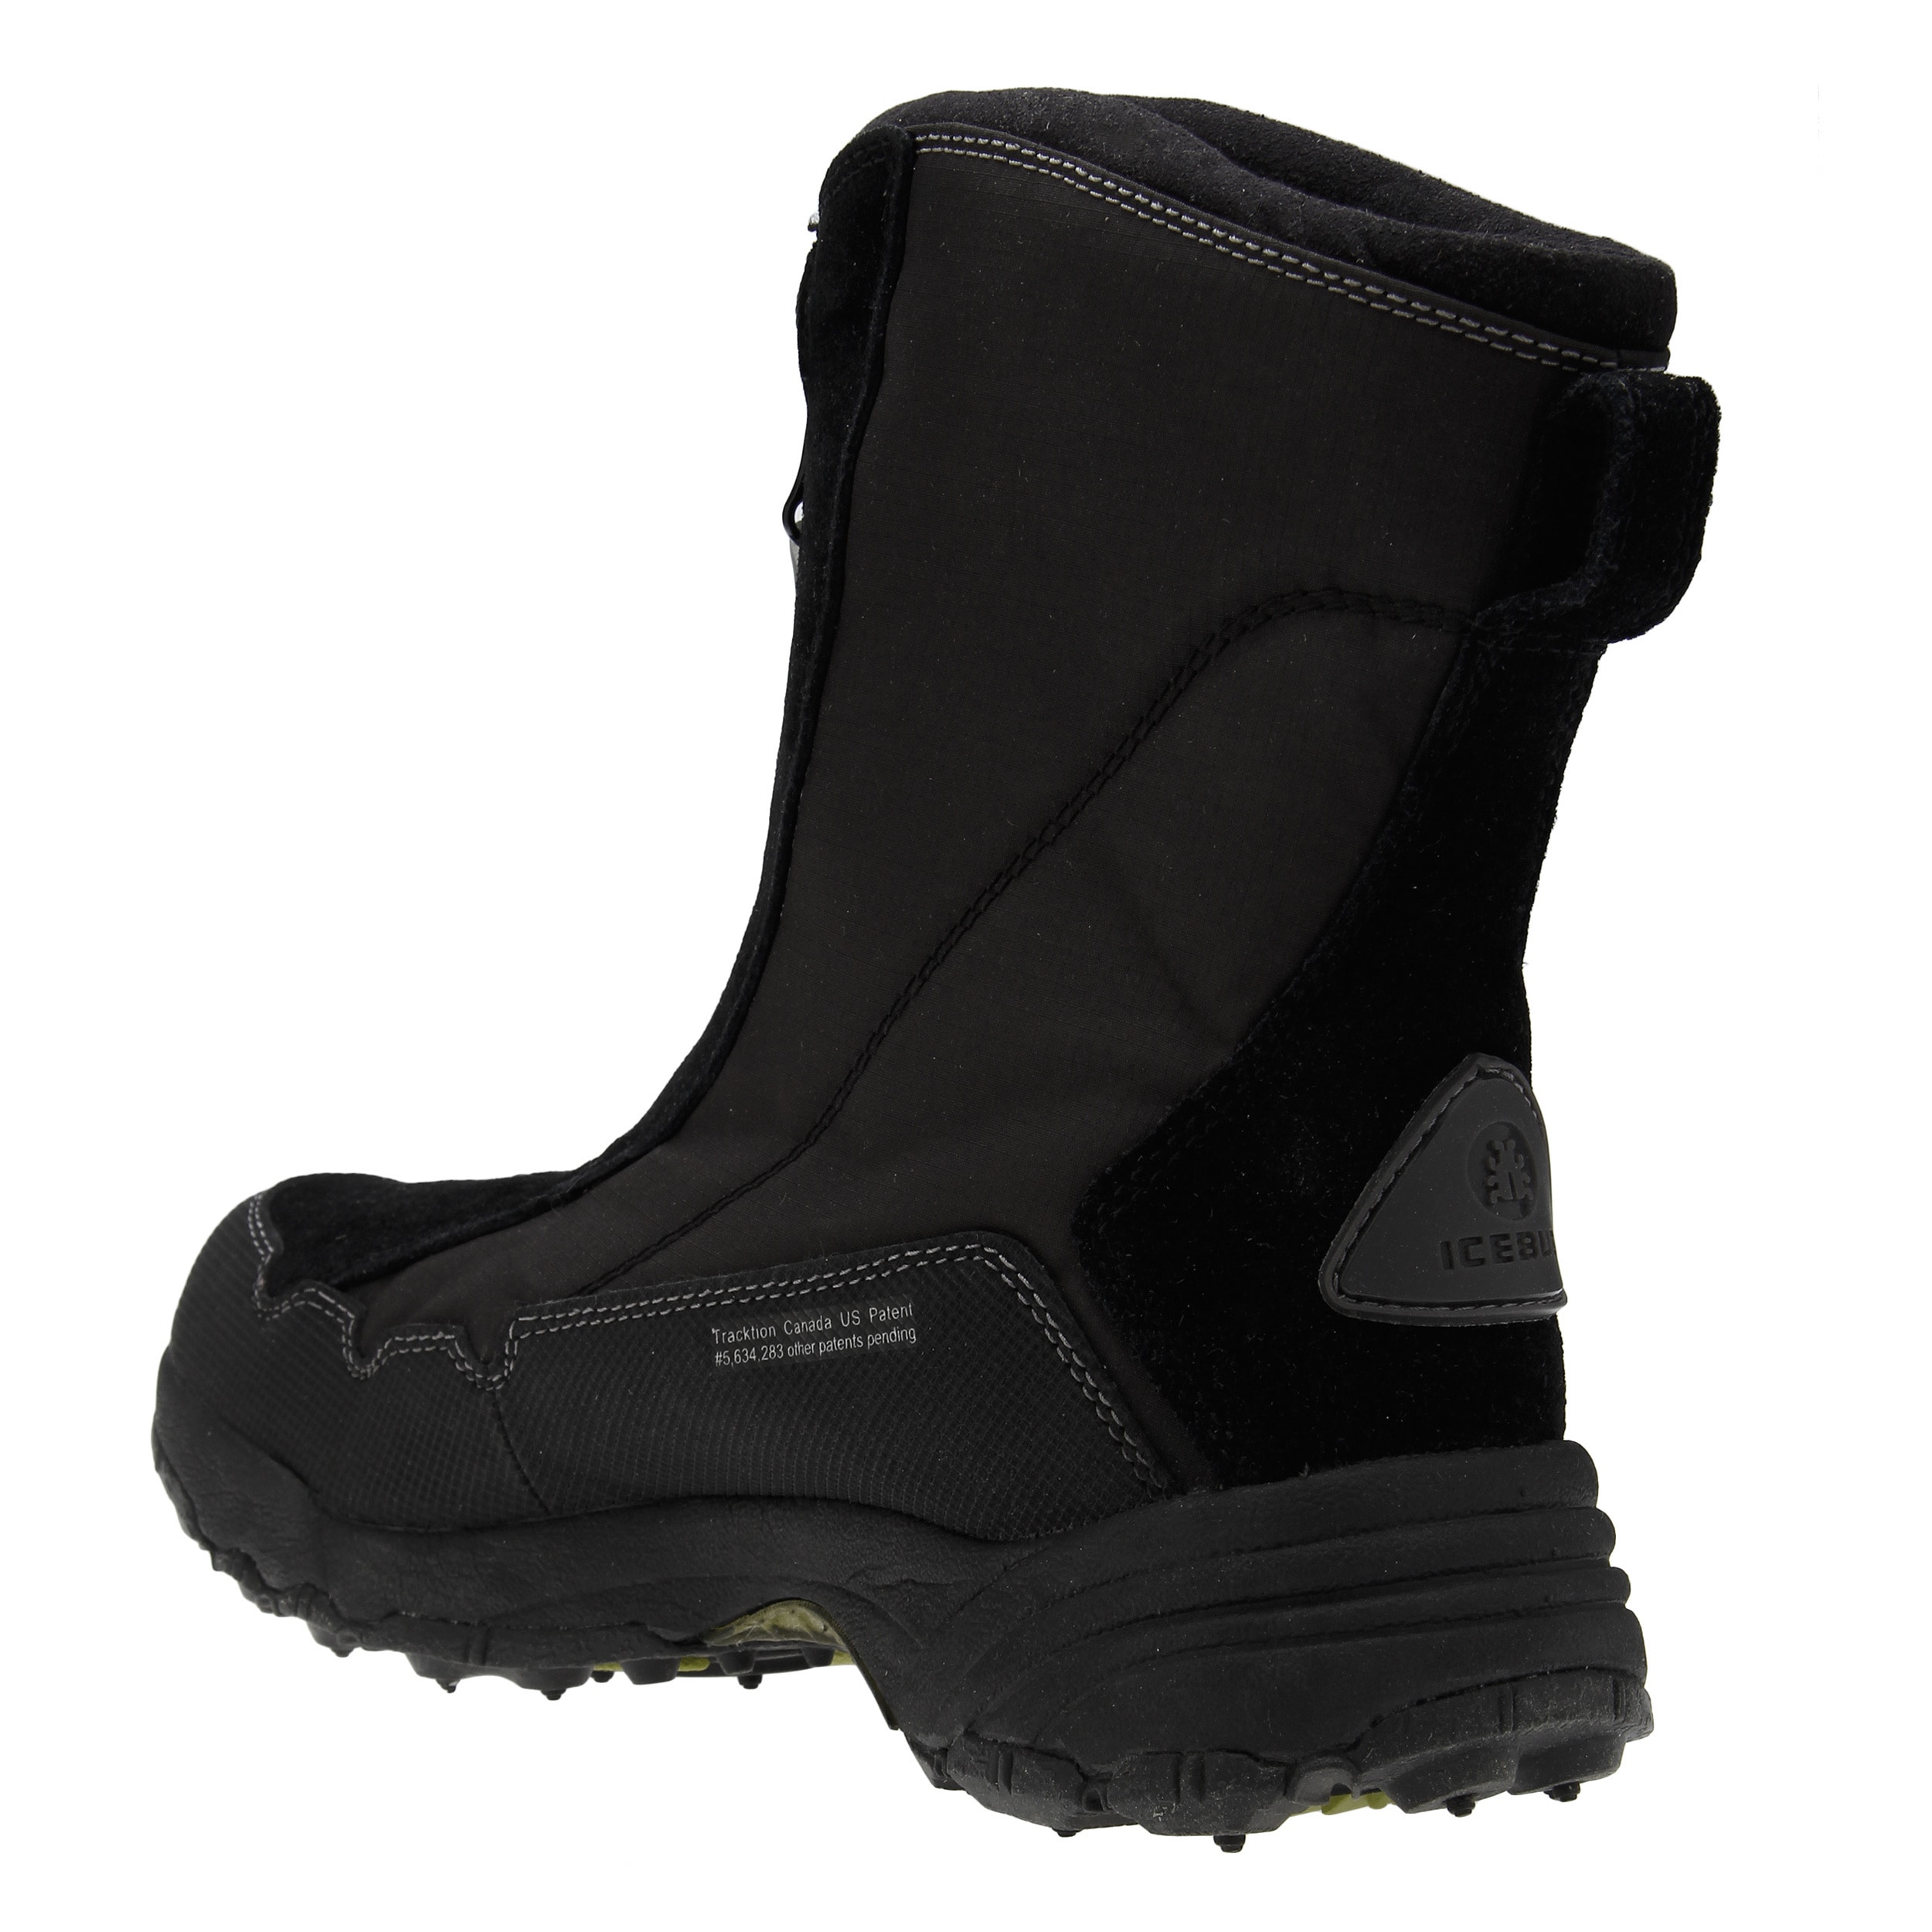 icebug women's boots